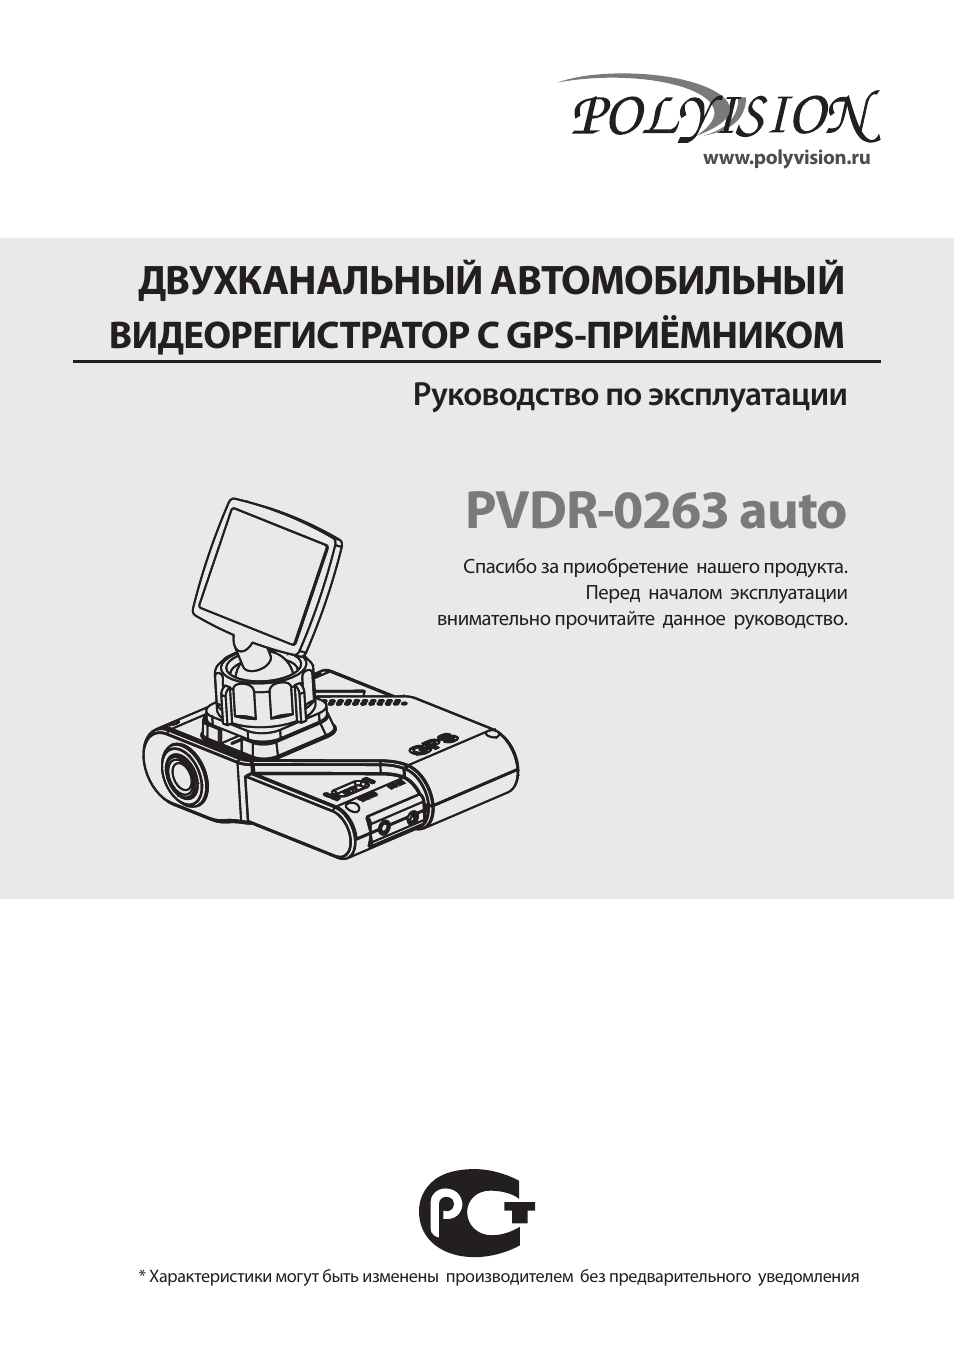 Pvdr 0453 видеорегистратор инструкция